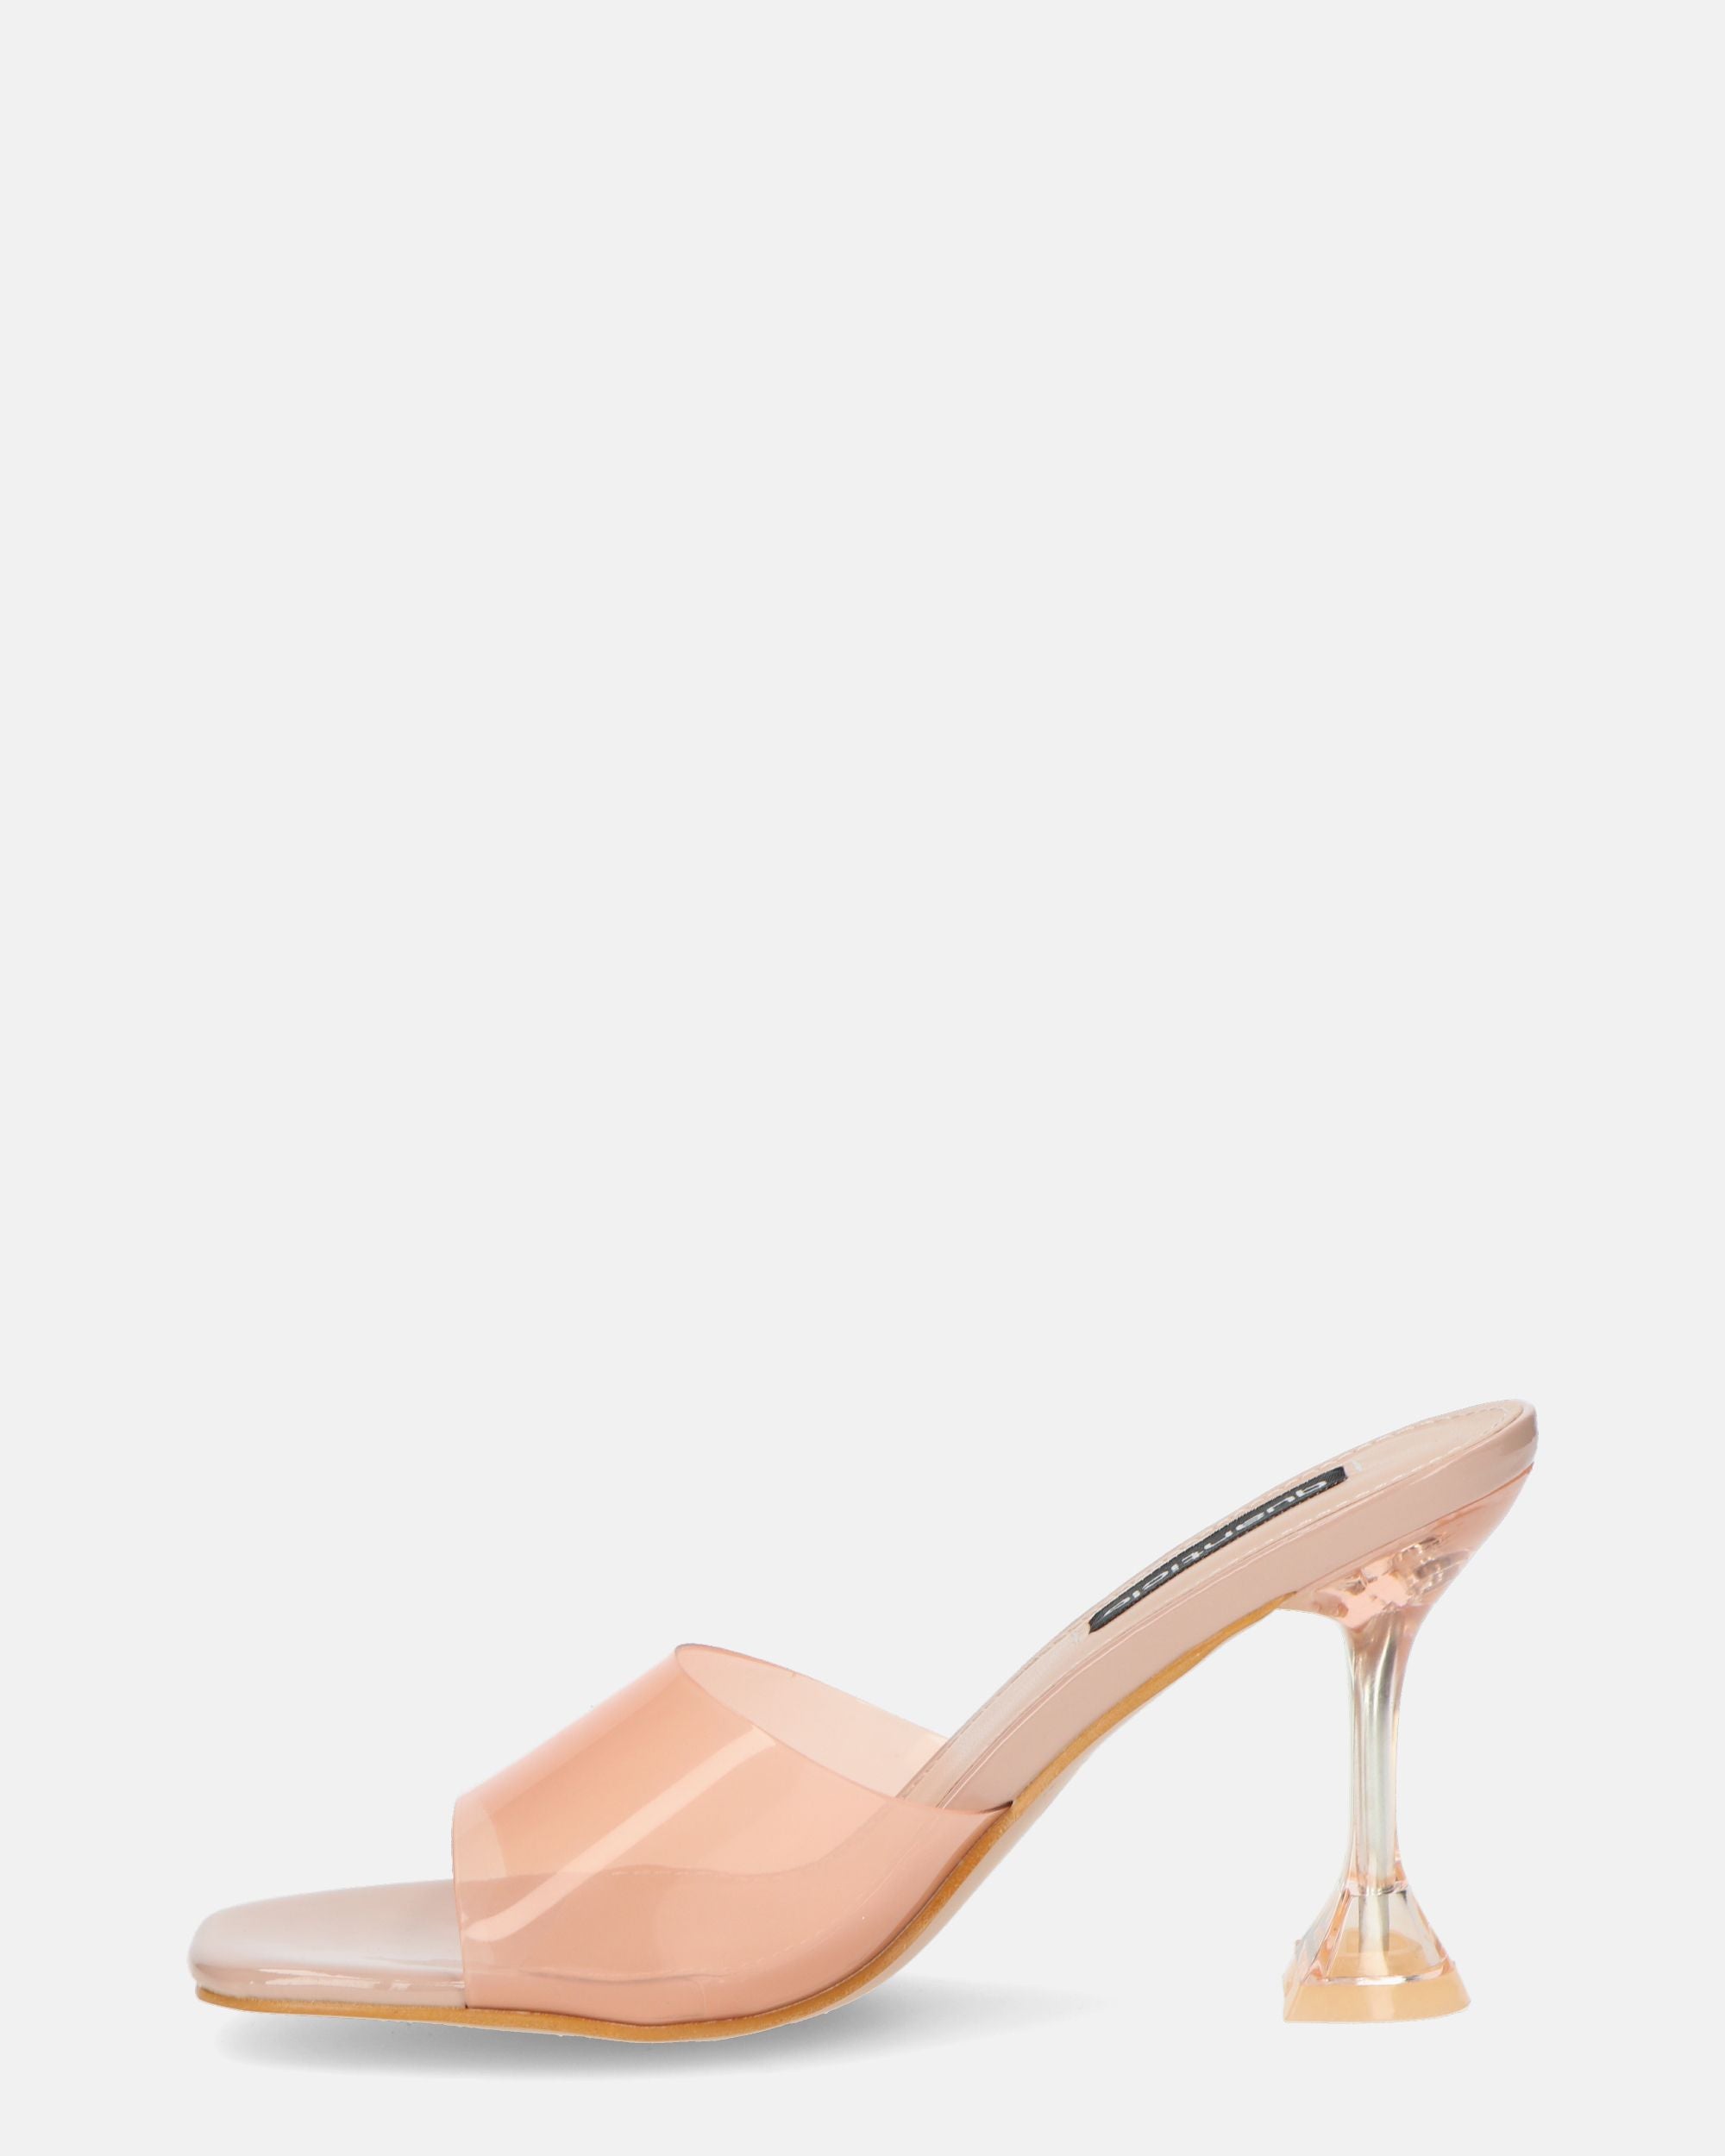 FIAMMA - sandalia de tacón en perspex beige con suela de PU